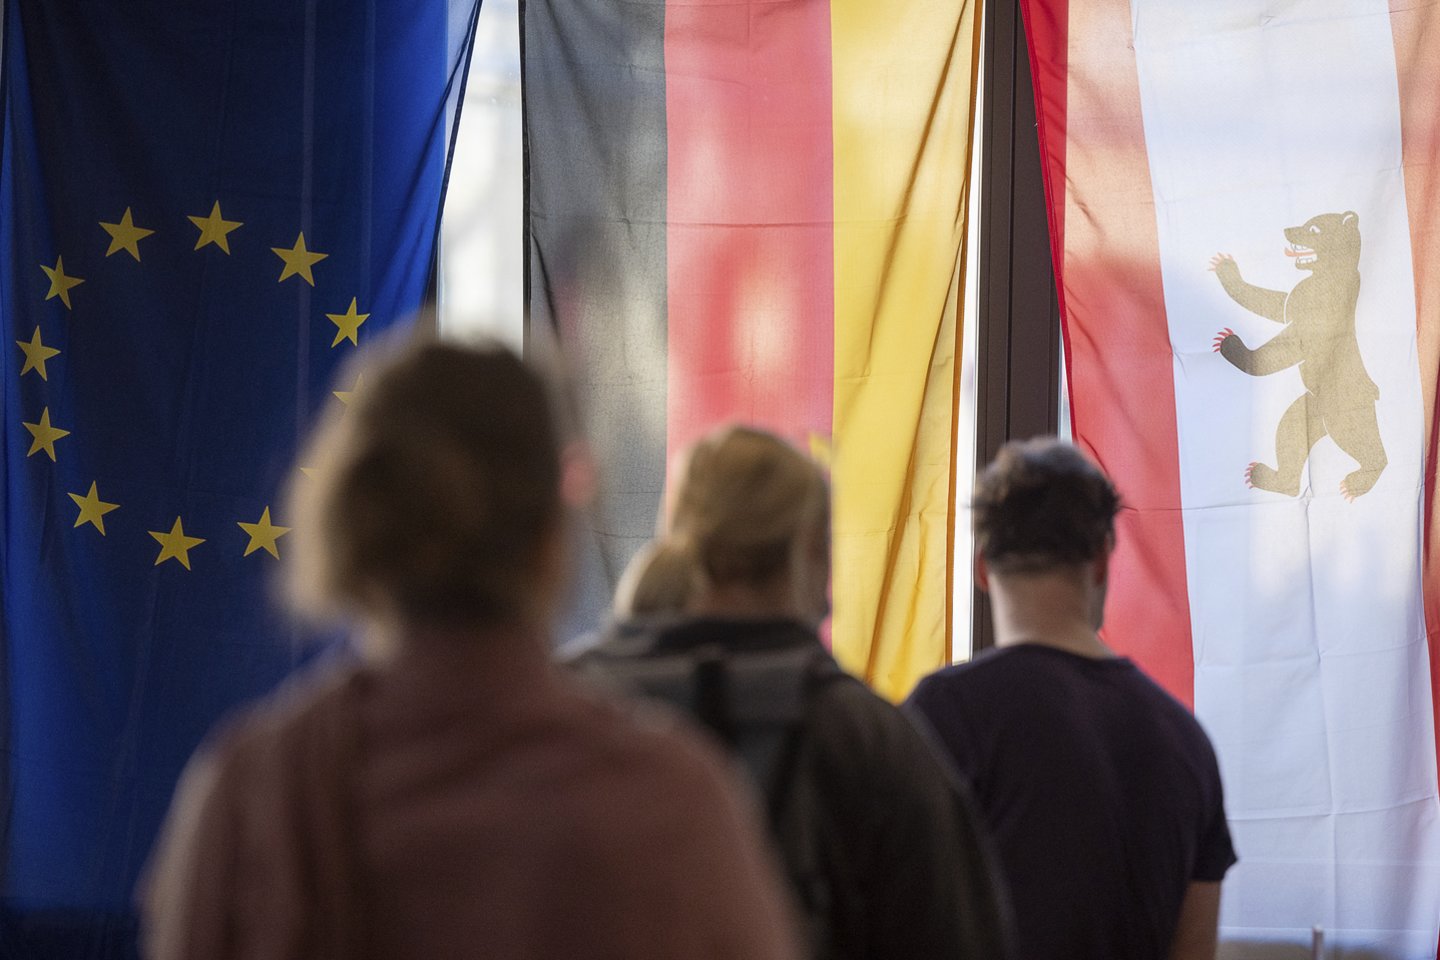  Vokietijoje trys partijos plečia derybas dėl vyriausybės formavimo.<br> AP/Scanpix nuotr.